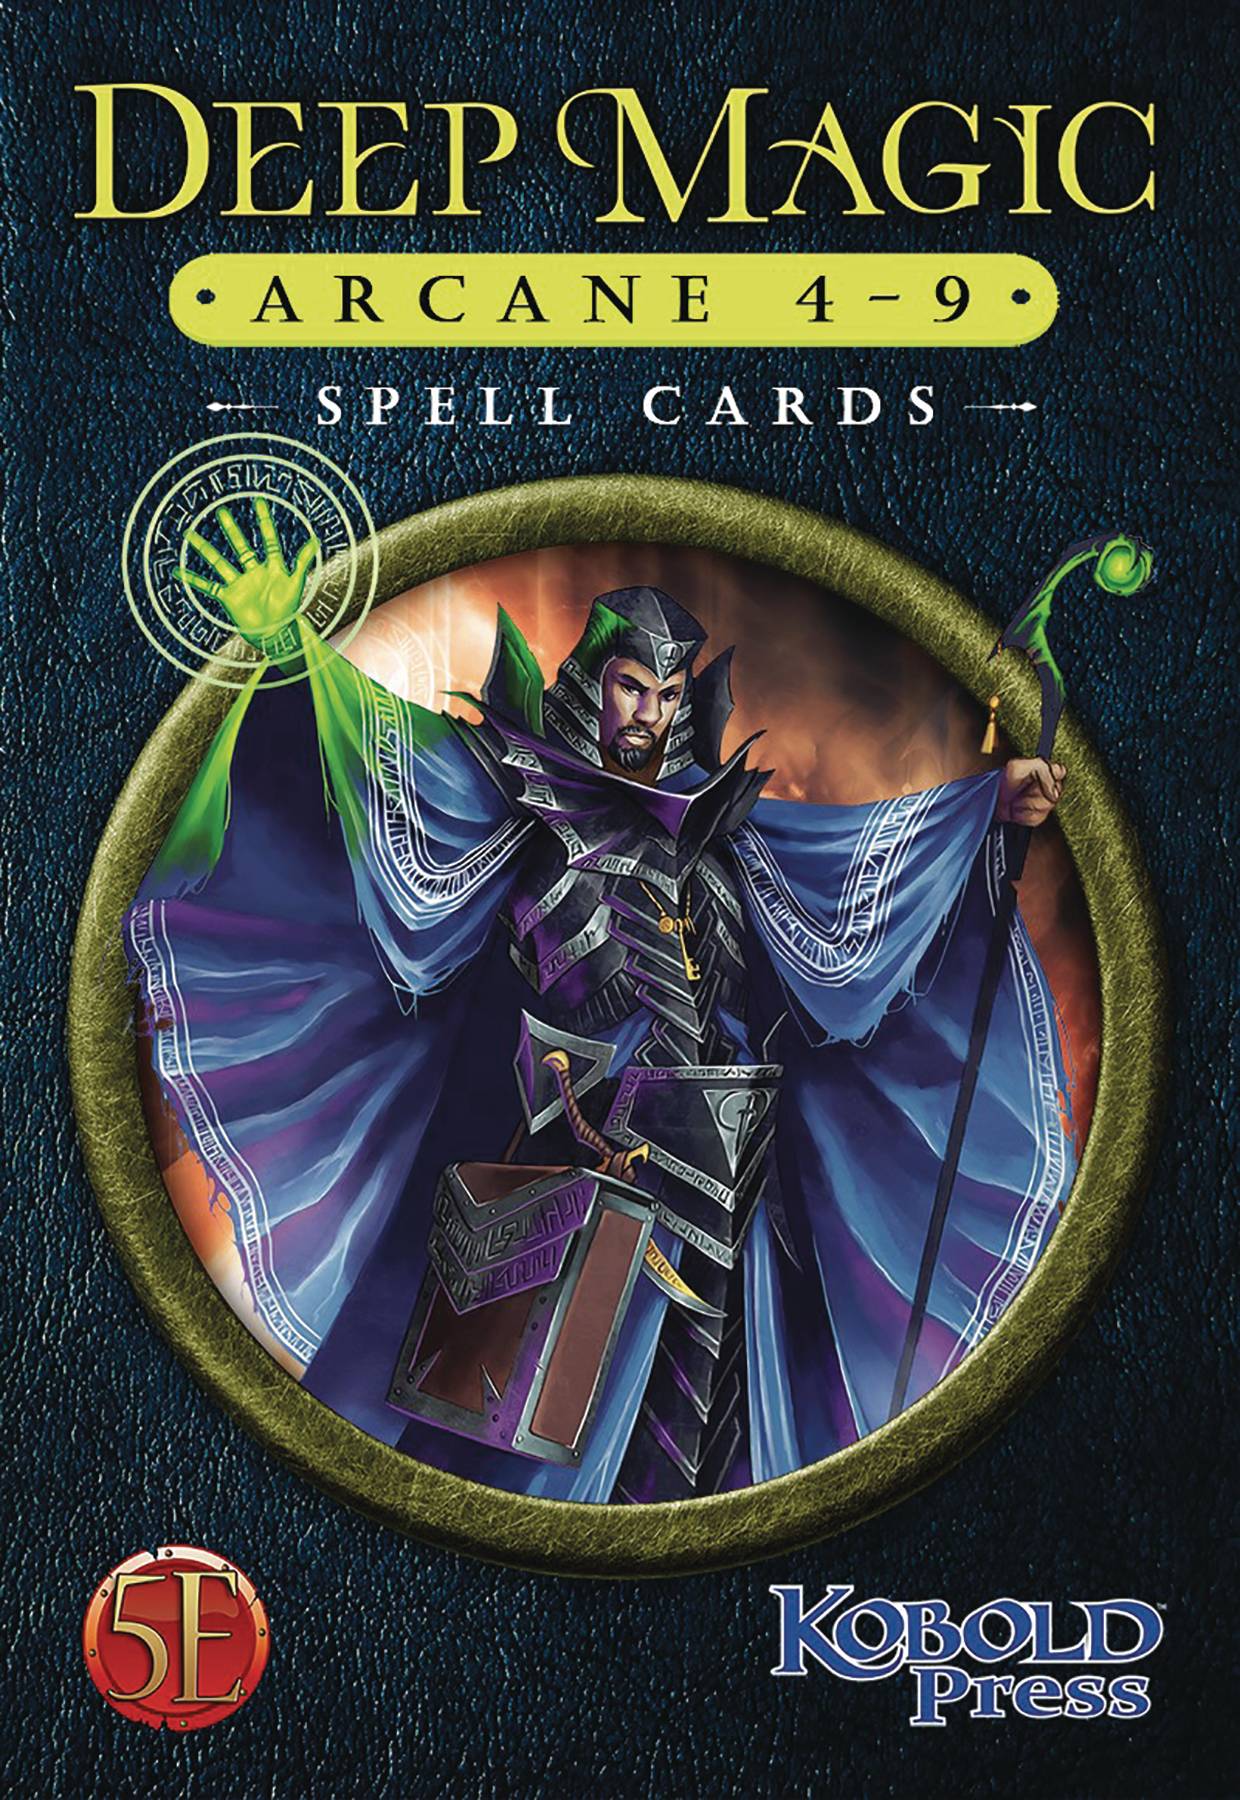 Deep Magic Spell Cards: Arcane 4-9